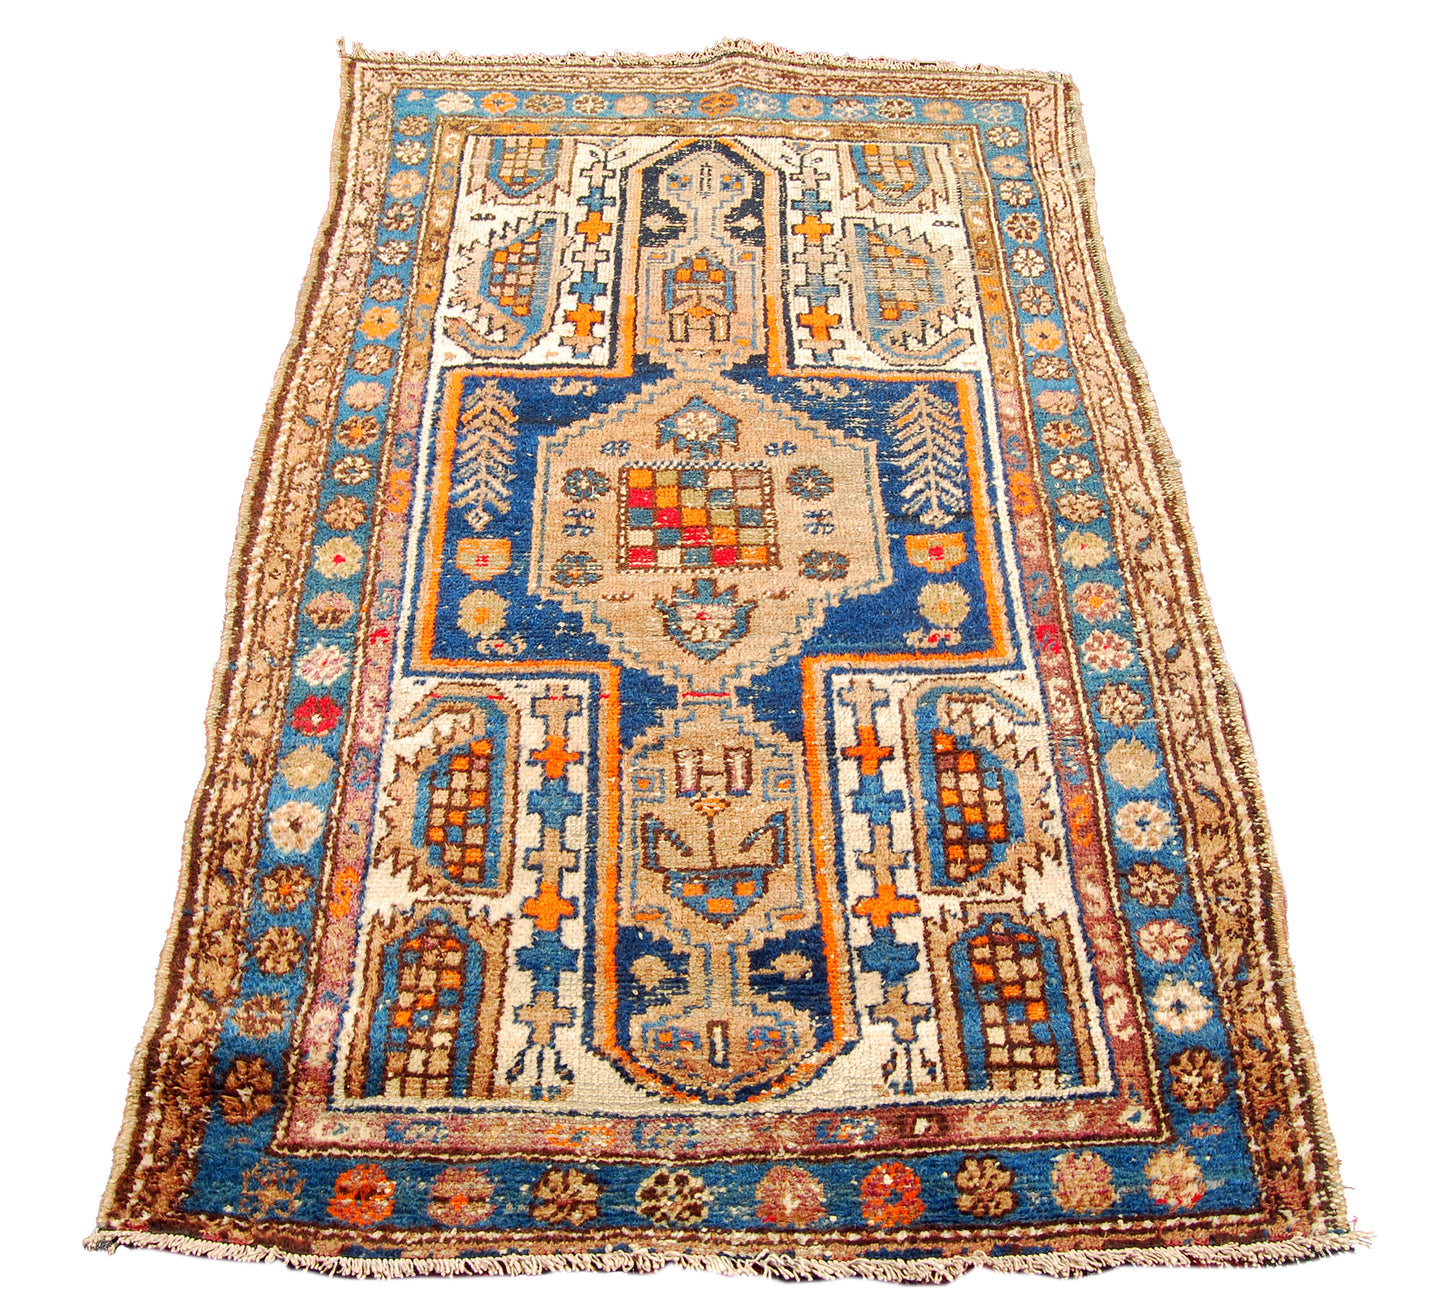 Ancient Antique Original Hand Made Carpets Tapis Teppich CM 166x105